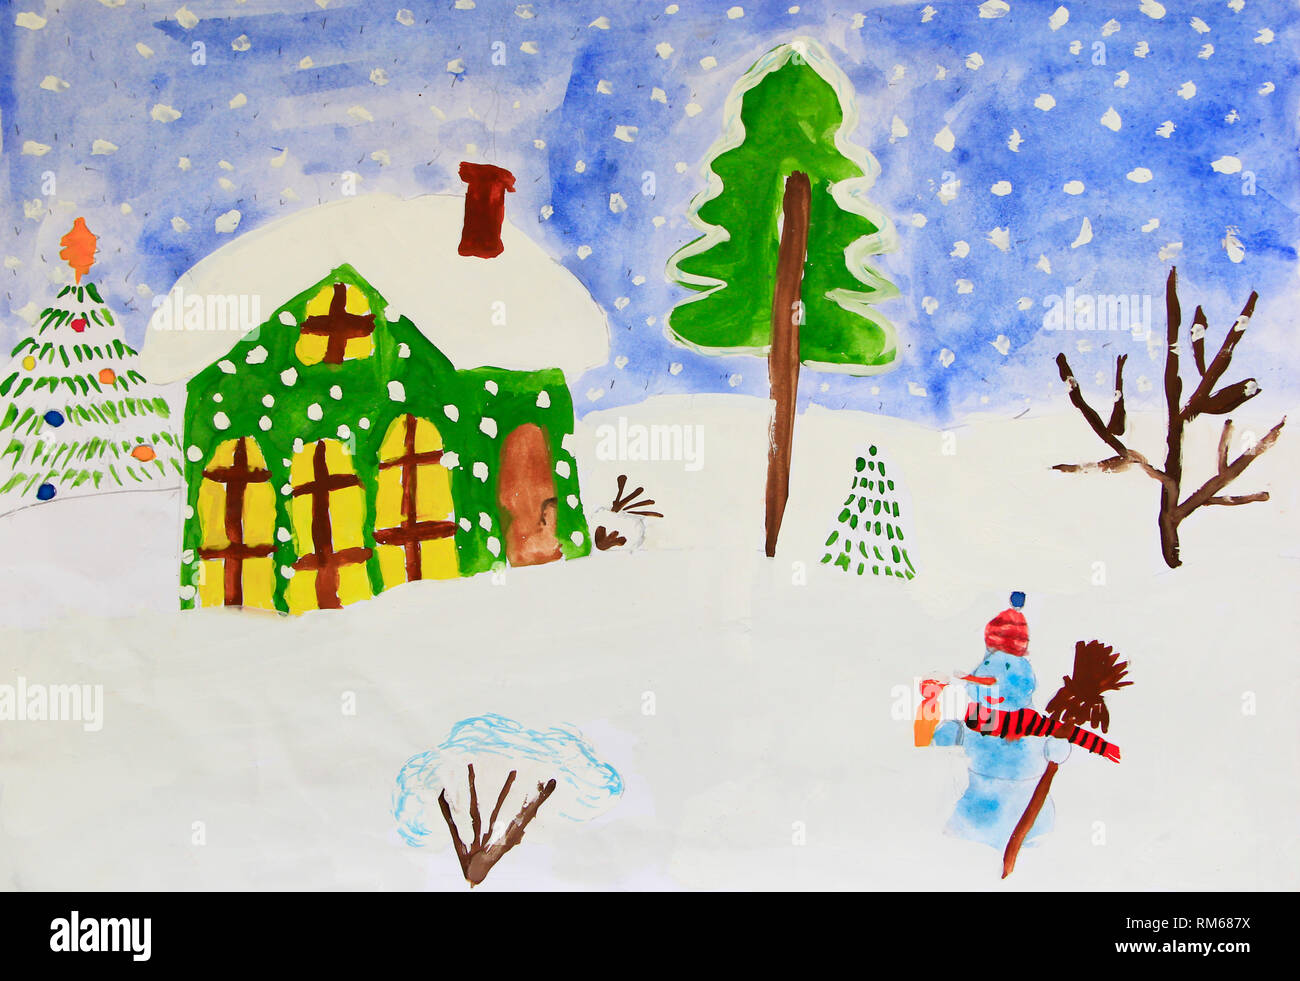 Weihnachten kindische Zeichnung der fabelhafte Schneemann und Haus. Kinder Lustige Zeichnung des Hauses stehen auf verschneiten Hügel Schneemann und Schneefall. Winter drawi Stockfoto